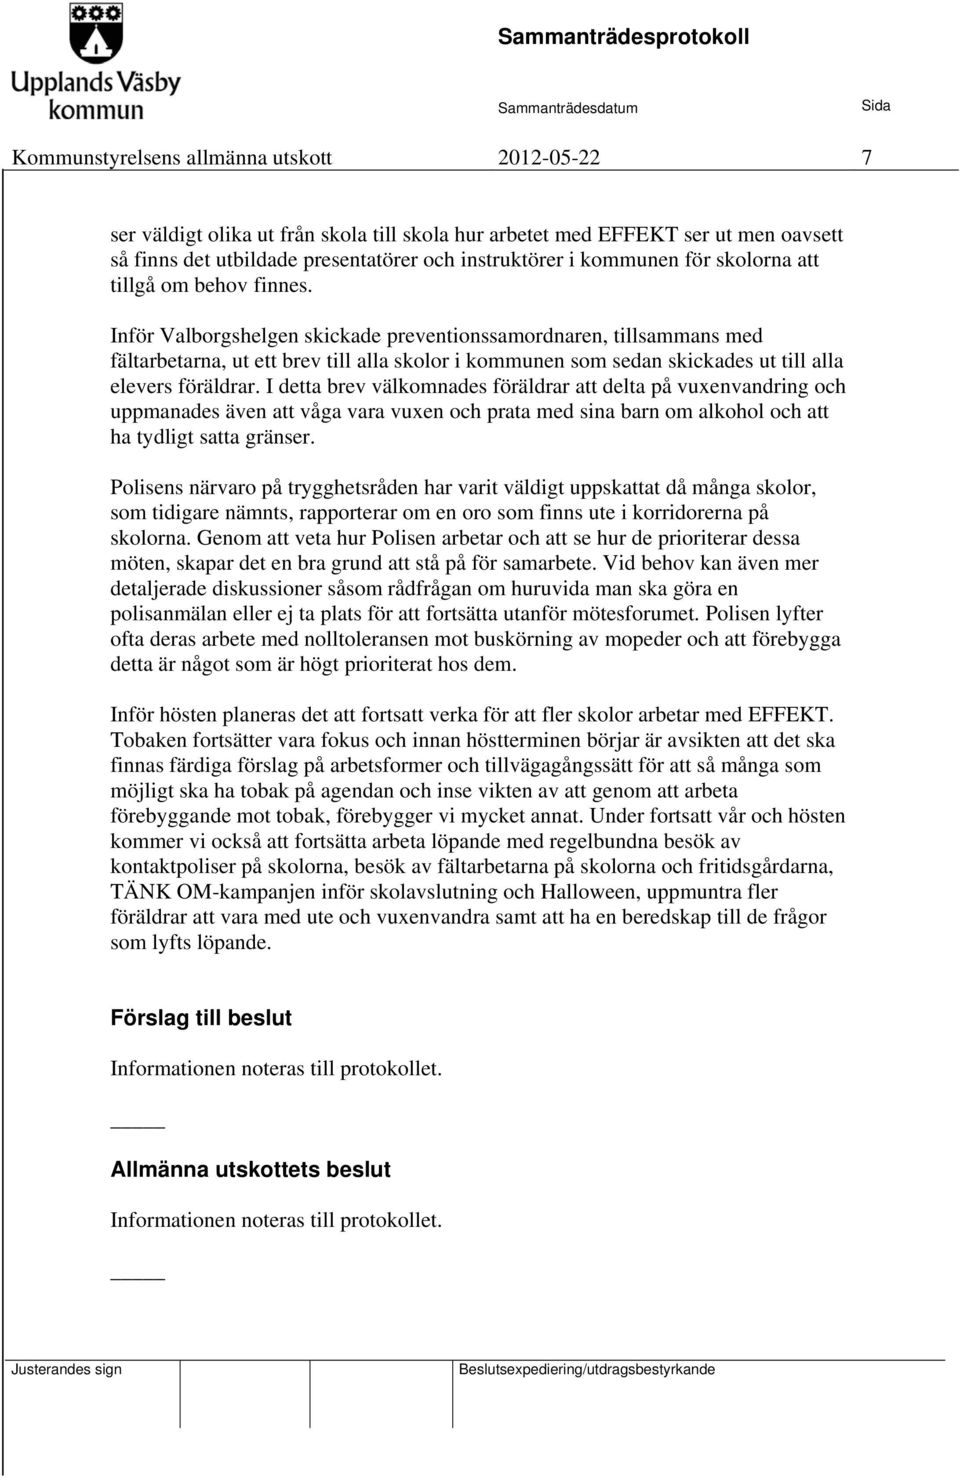 Inför Valborgshelgen skickade preventionssamordnaren, tillsammans med fältarbetarna, ut ett brev till alla skolor i kommunen som sedan skickades ut till alla elevers föräldrar.